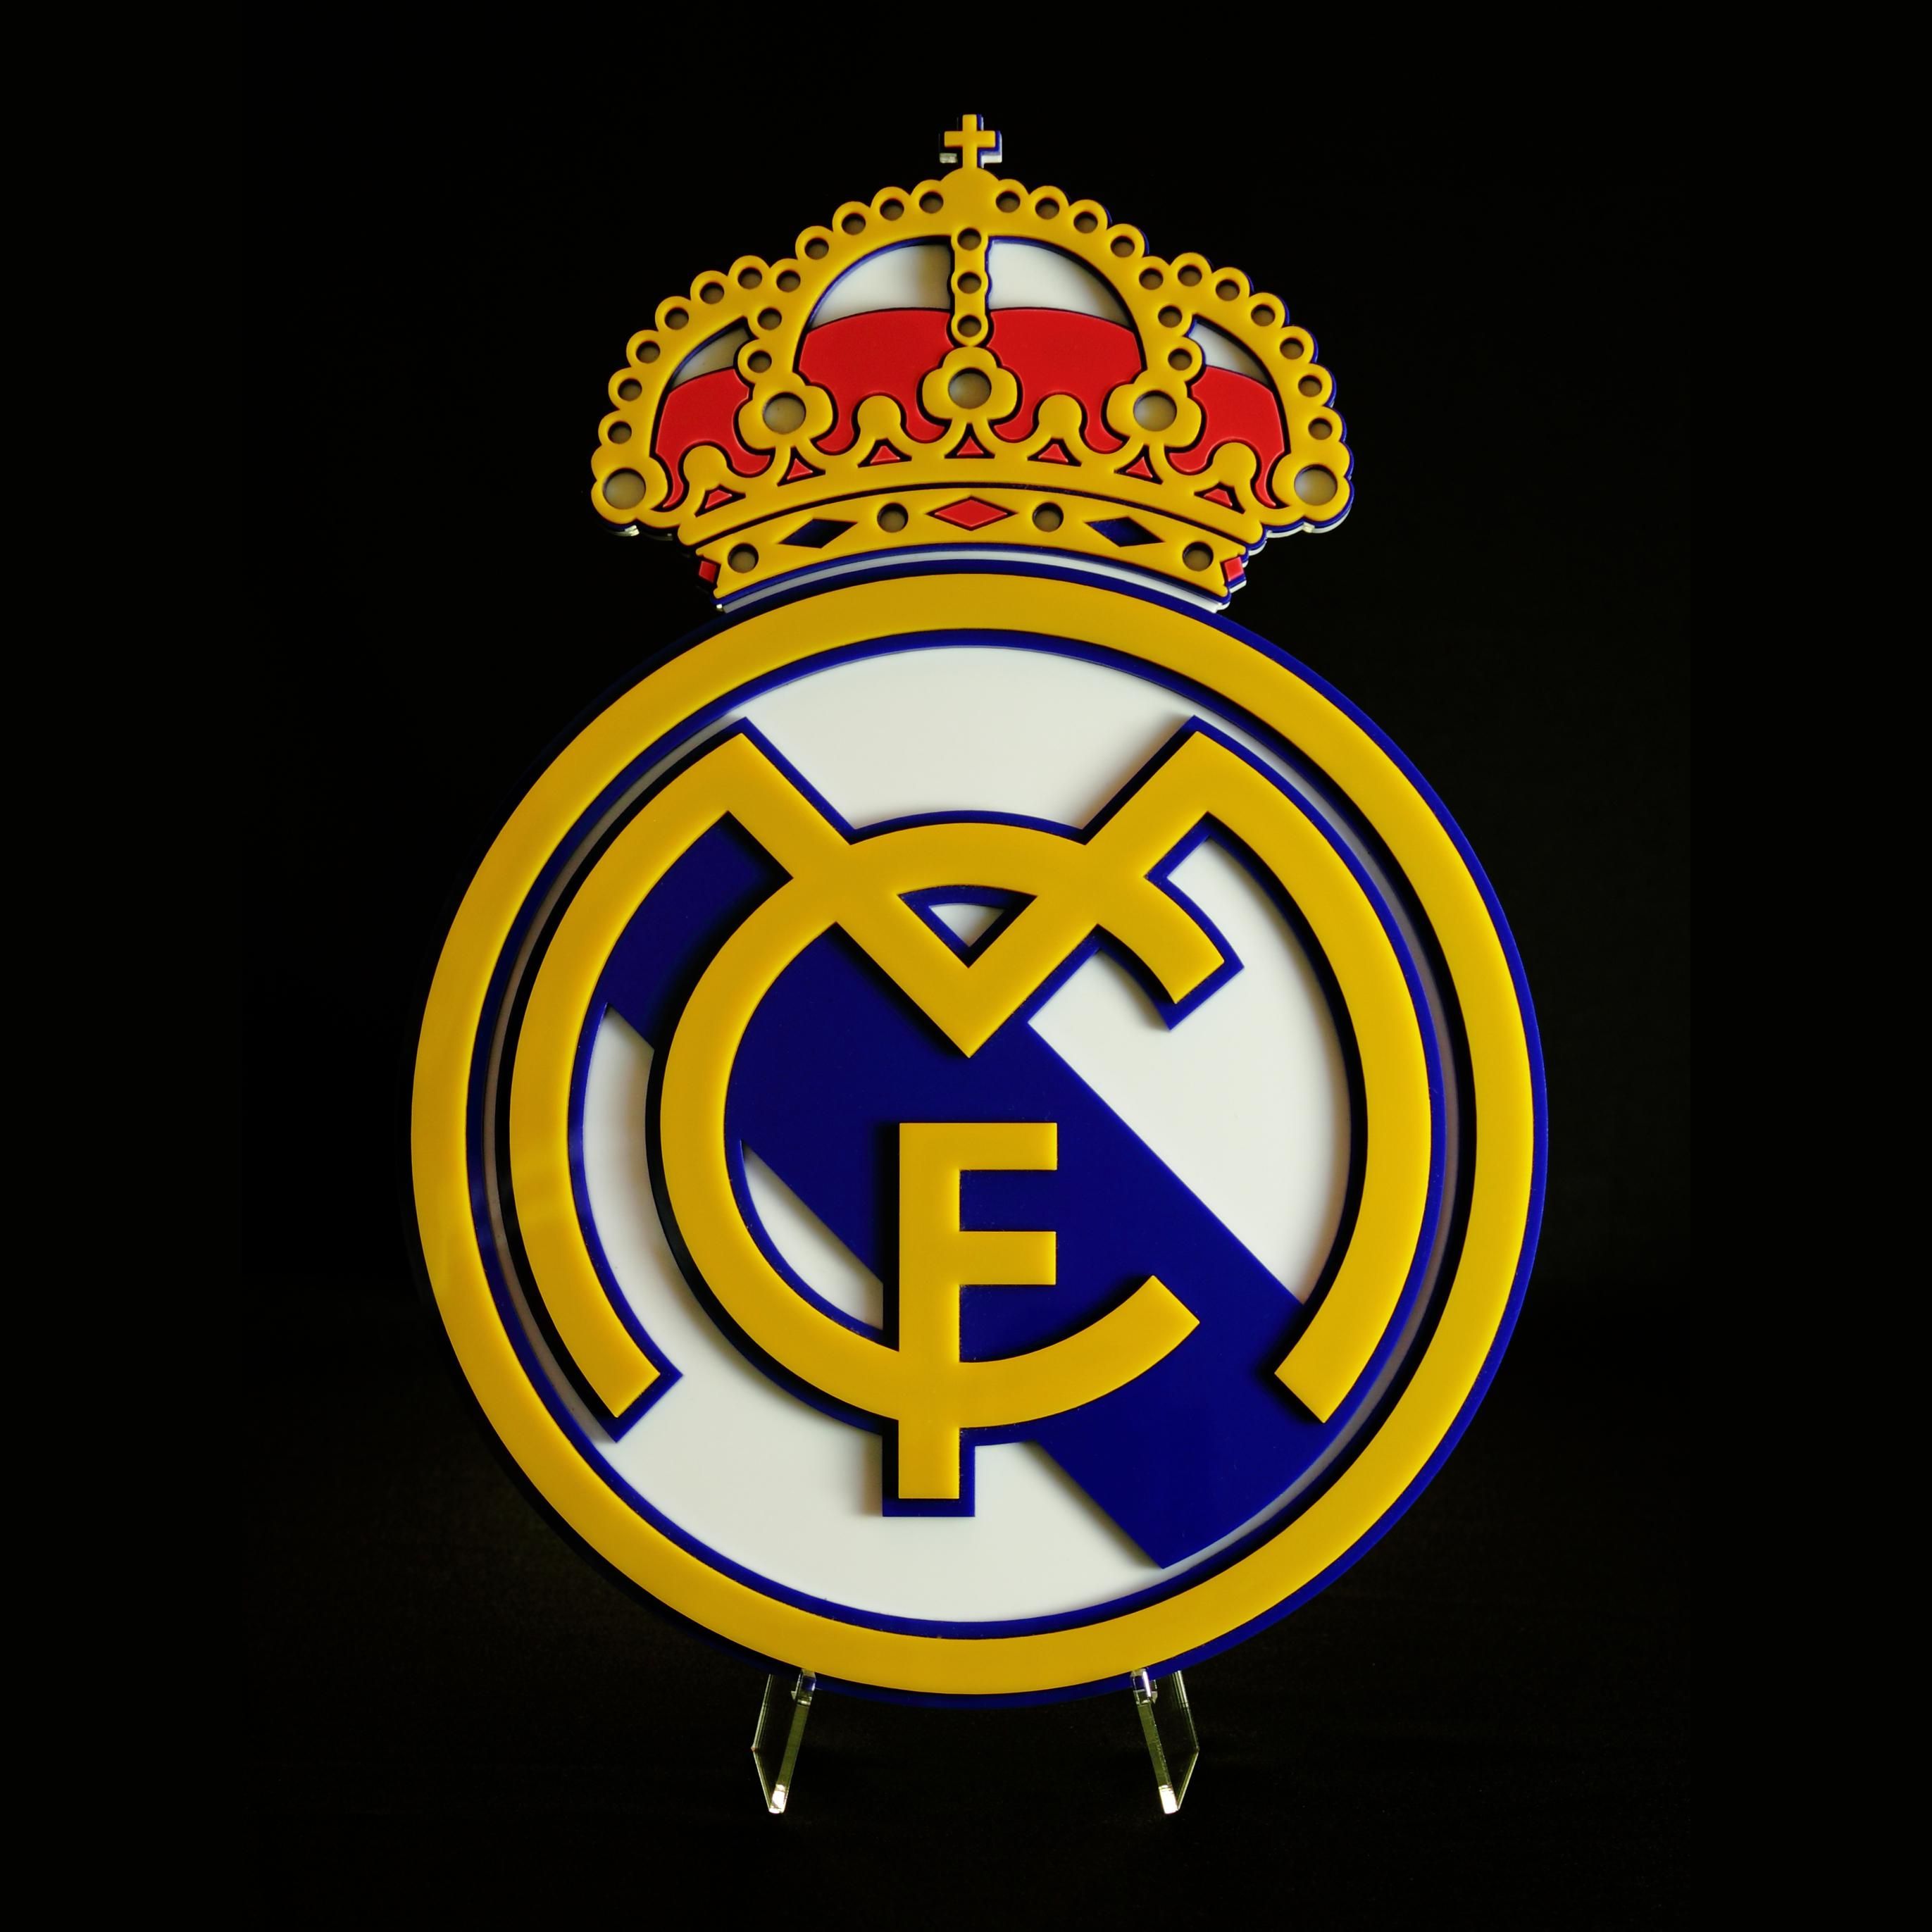 Real Madrid. Real madrid wallpaper, Real madrid logo wallpaper, Real madrid logo